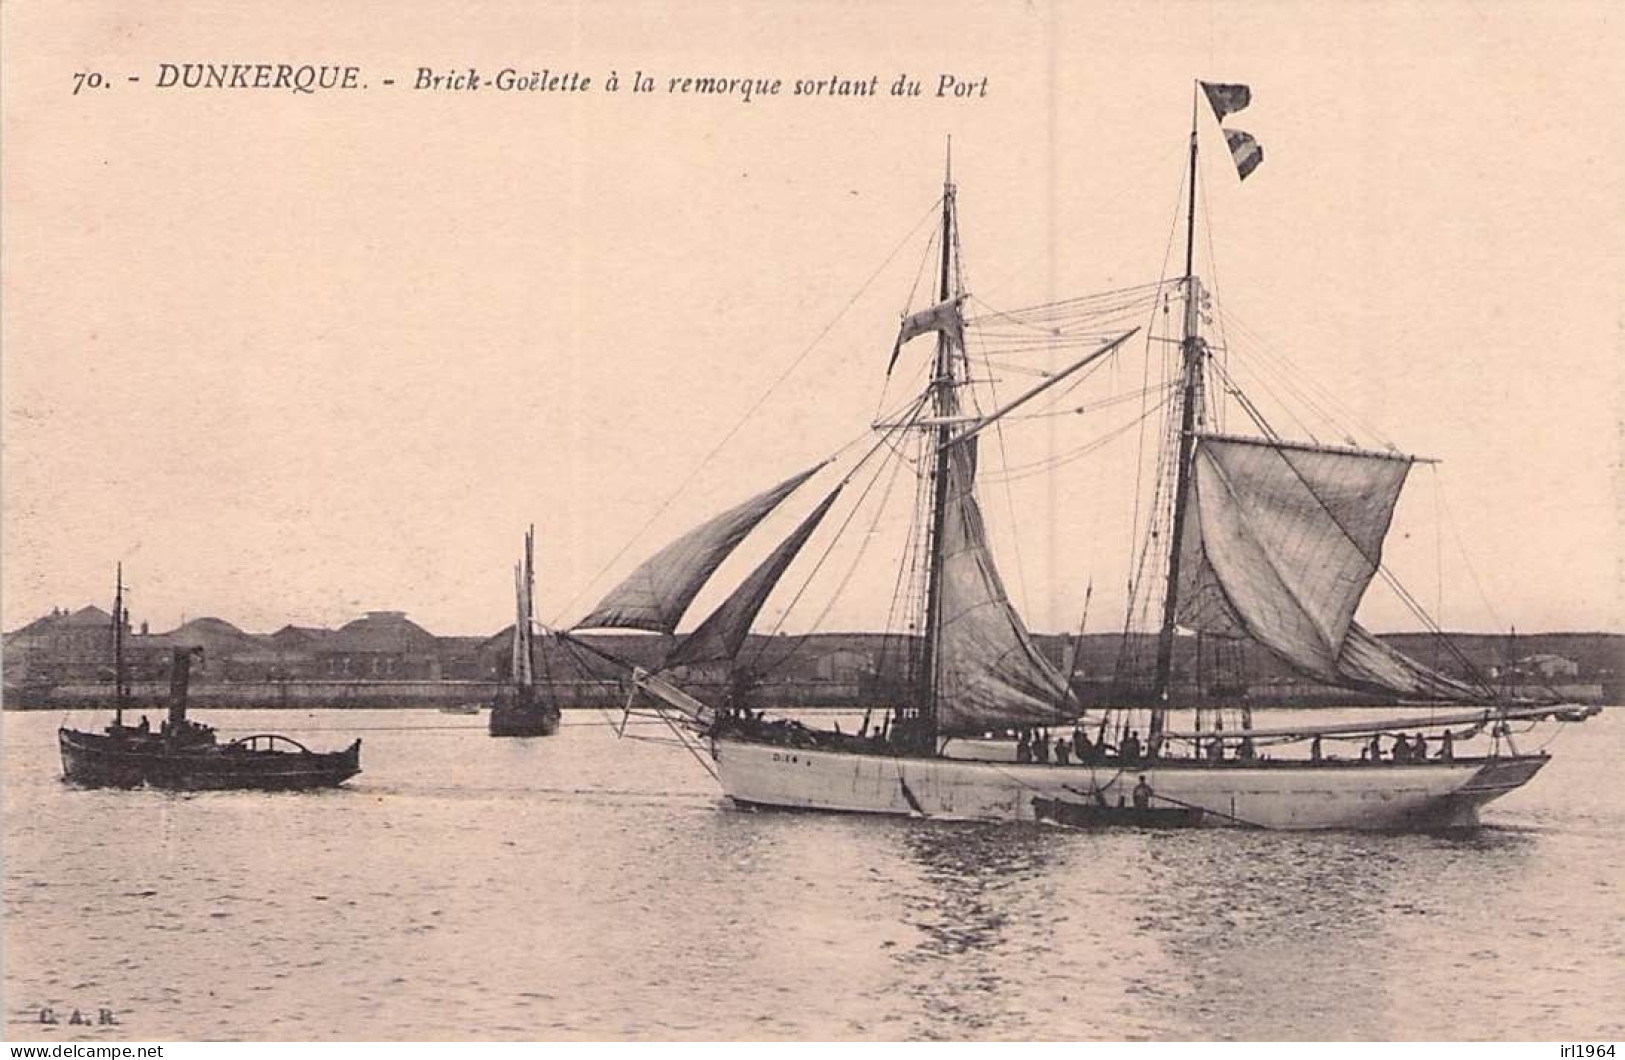 DUNKERQUE BRICK GOELETTE A LA REMORQUE SORTANT DU PORT - Dunkerque